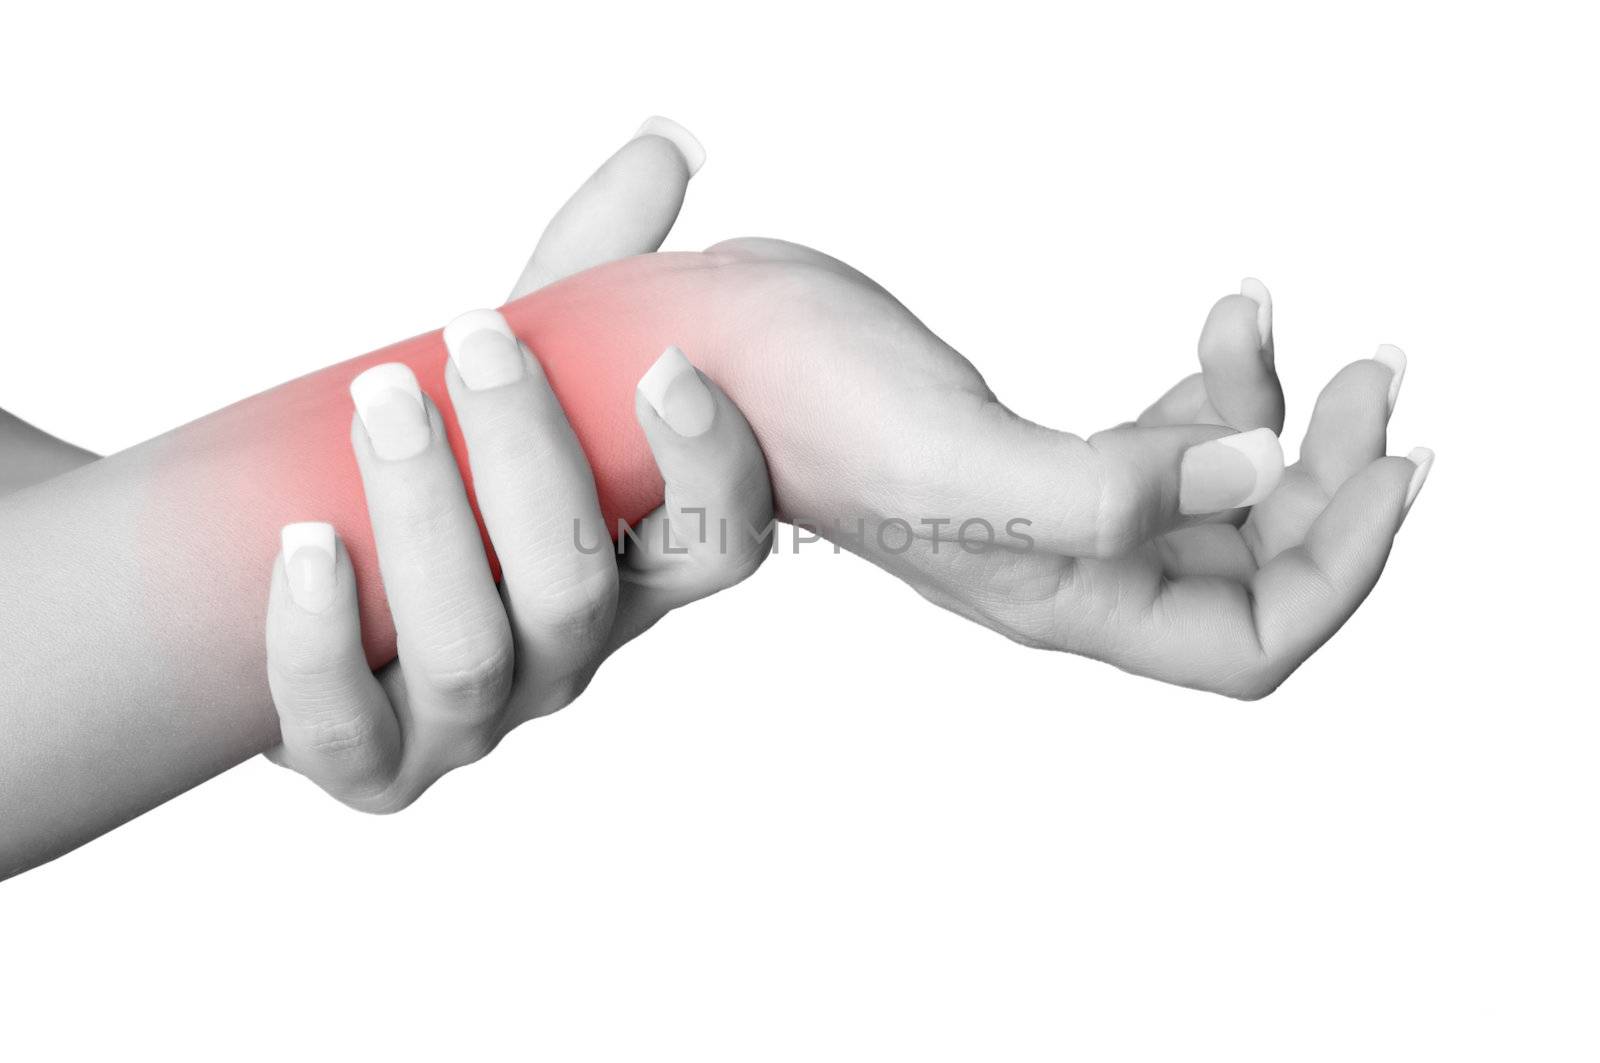 Wrist Pain by ruigsantos